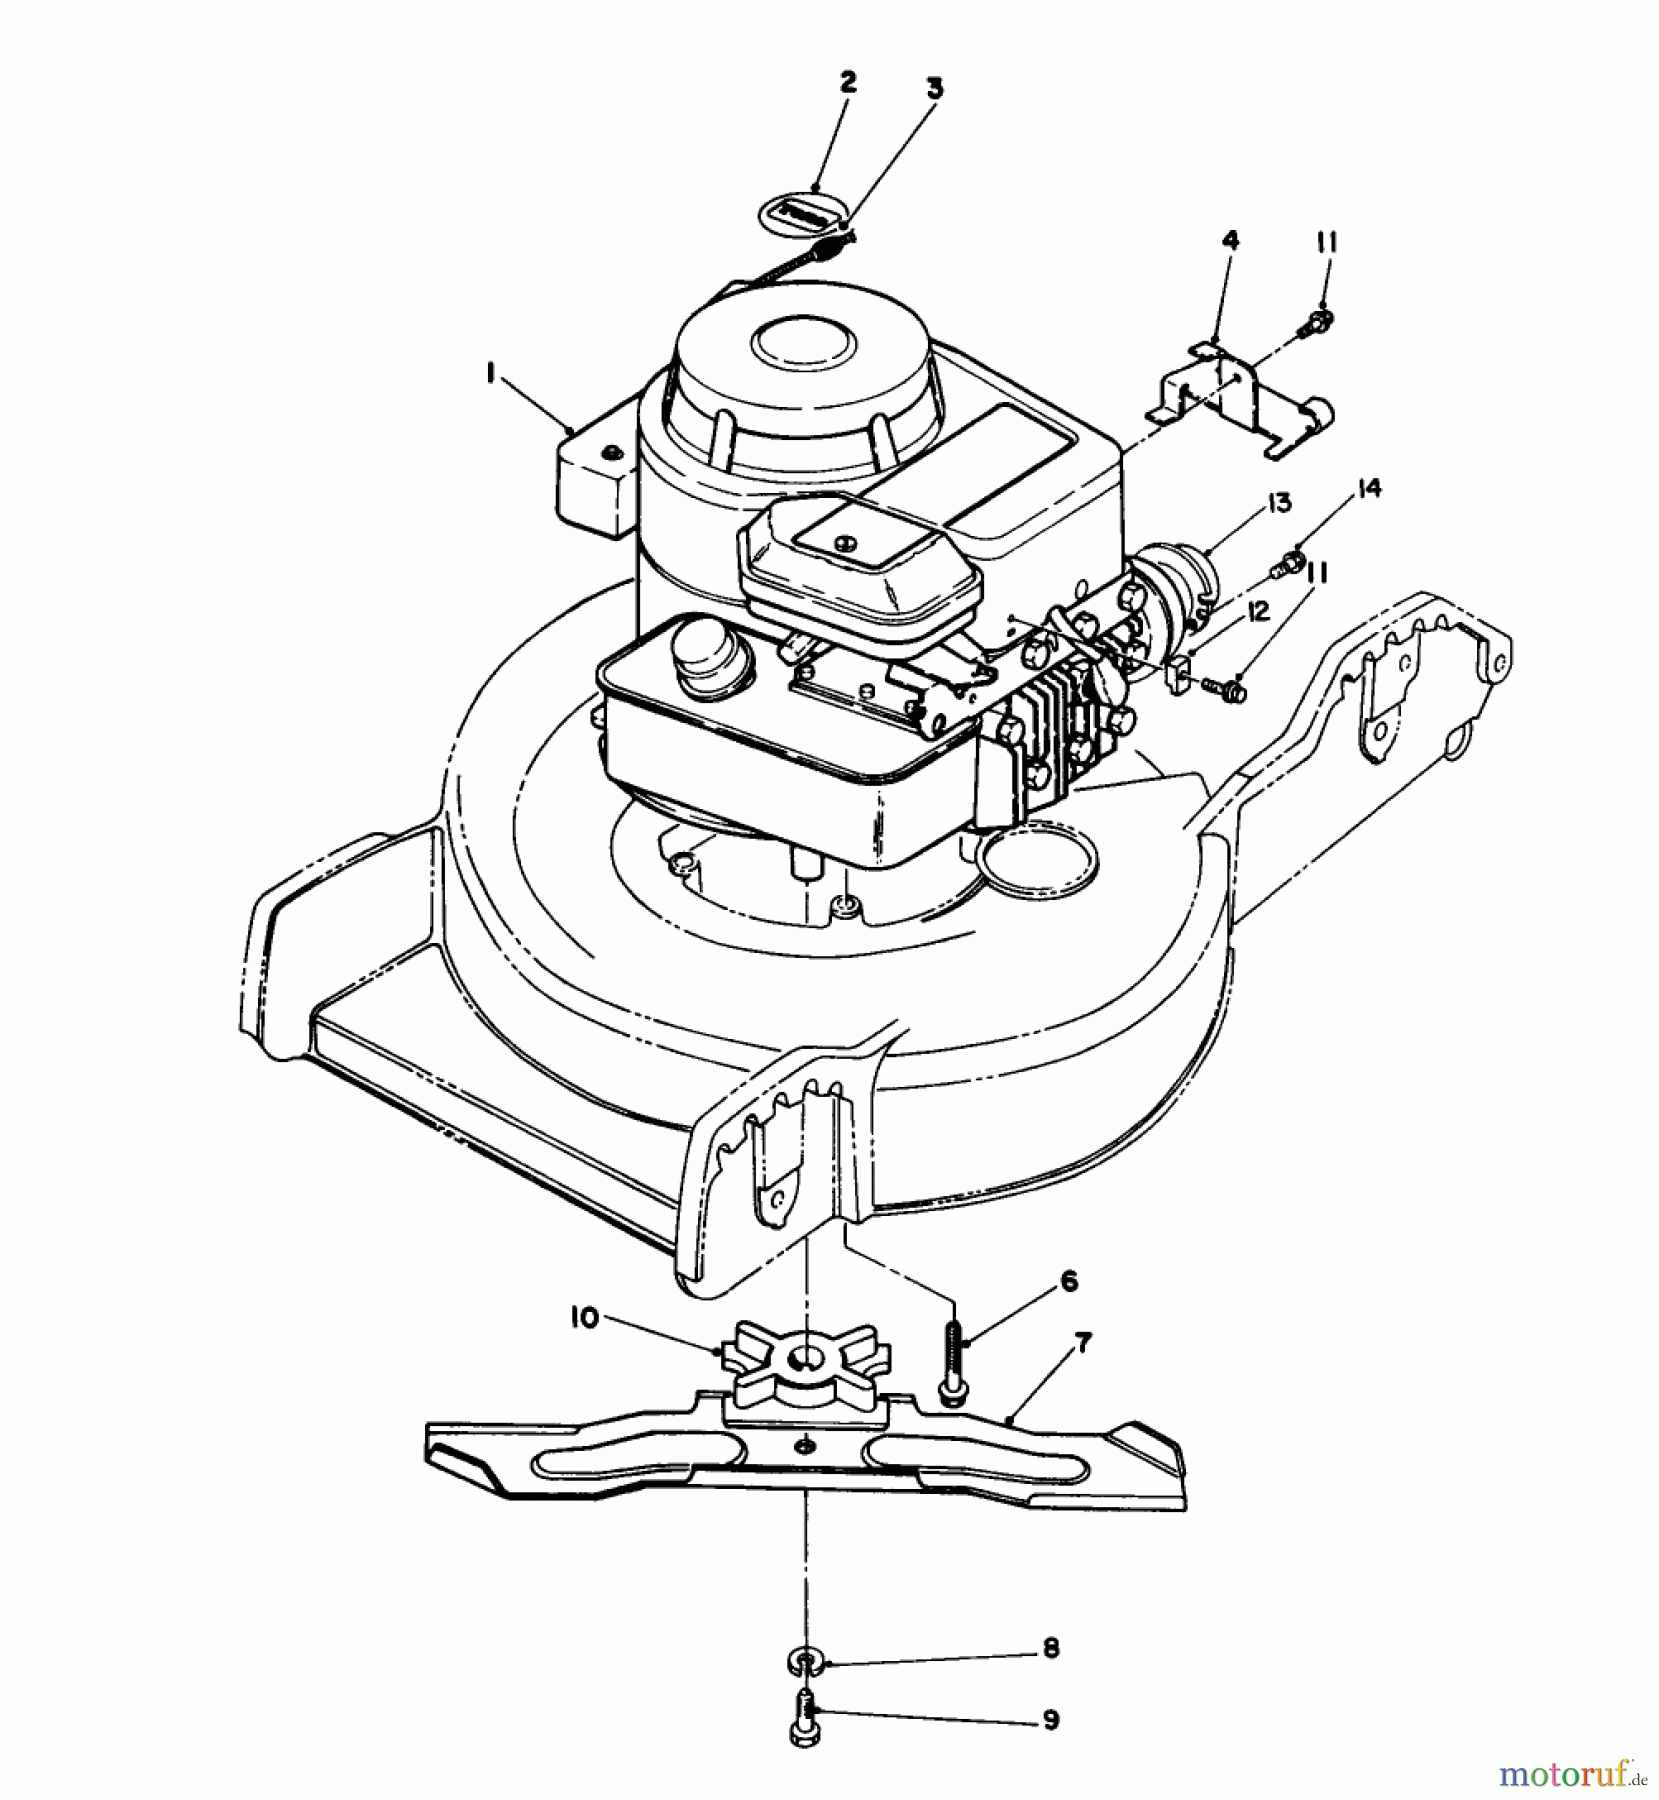  Toro Neu Mowers, Walk-Behind Seite 1 20182 - Toro Lawnmower, 1993 (39000001-39999999) ENGINE ASSEMBLY